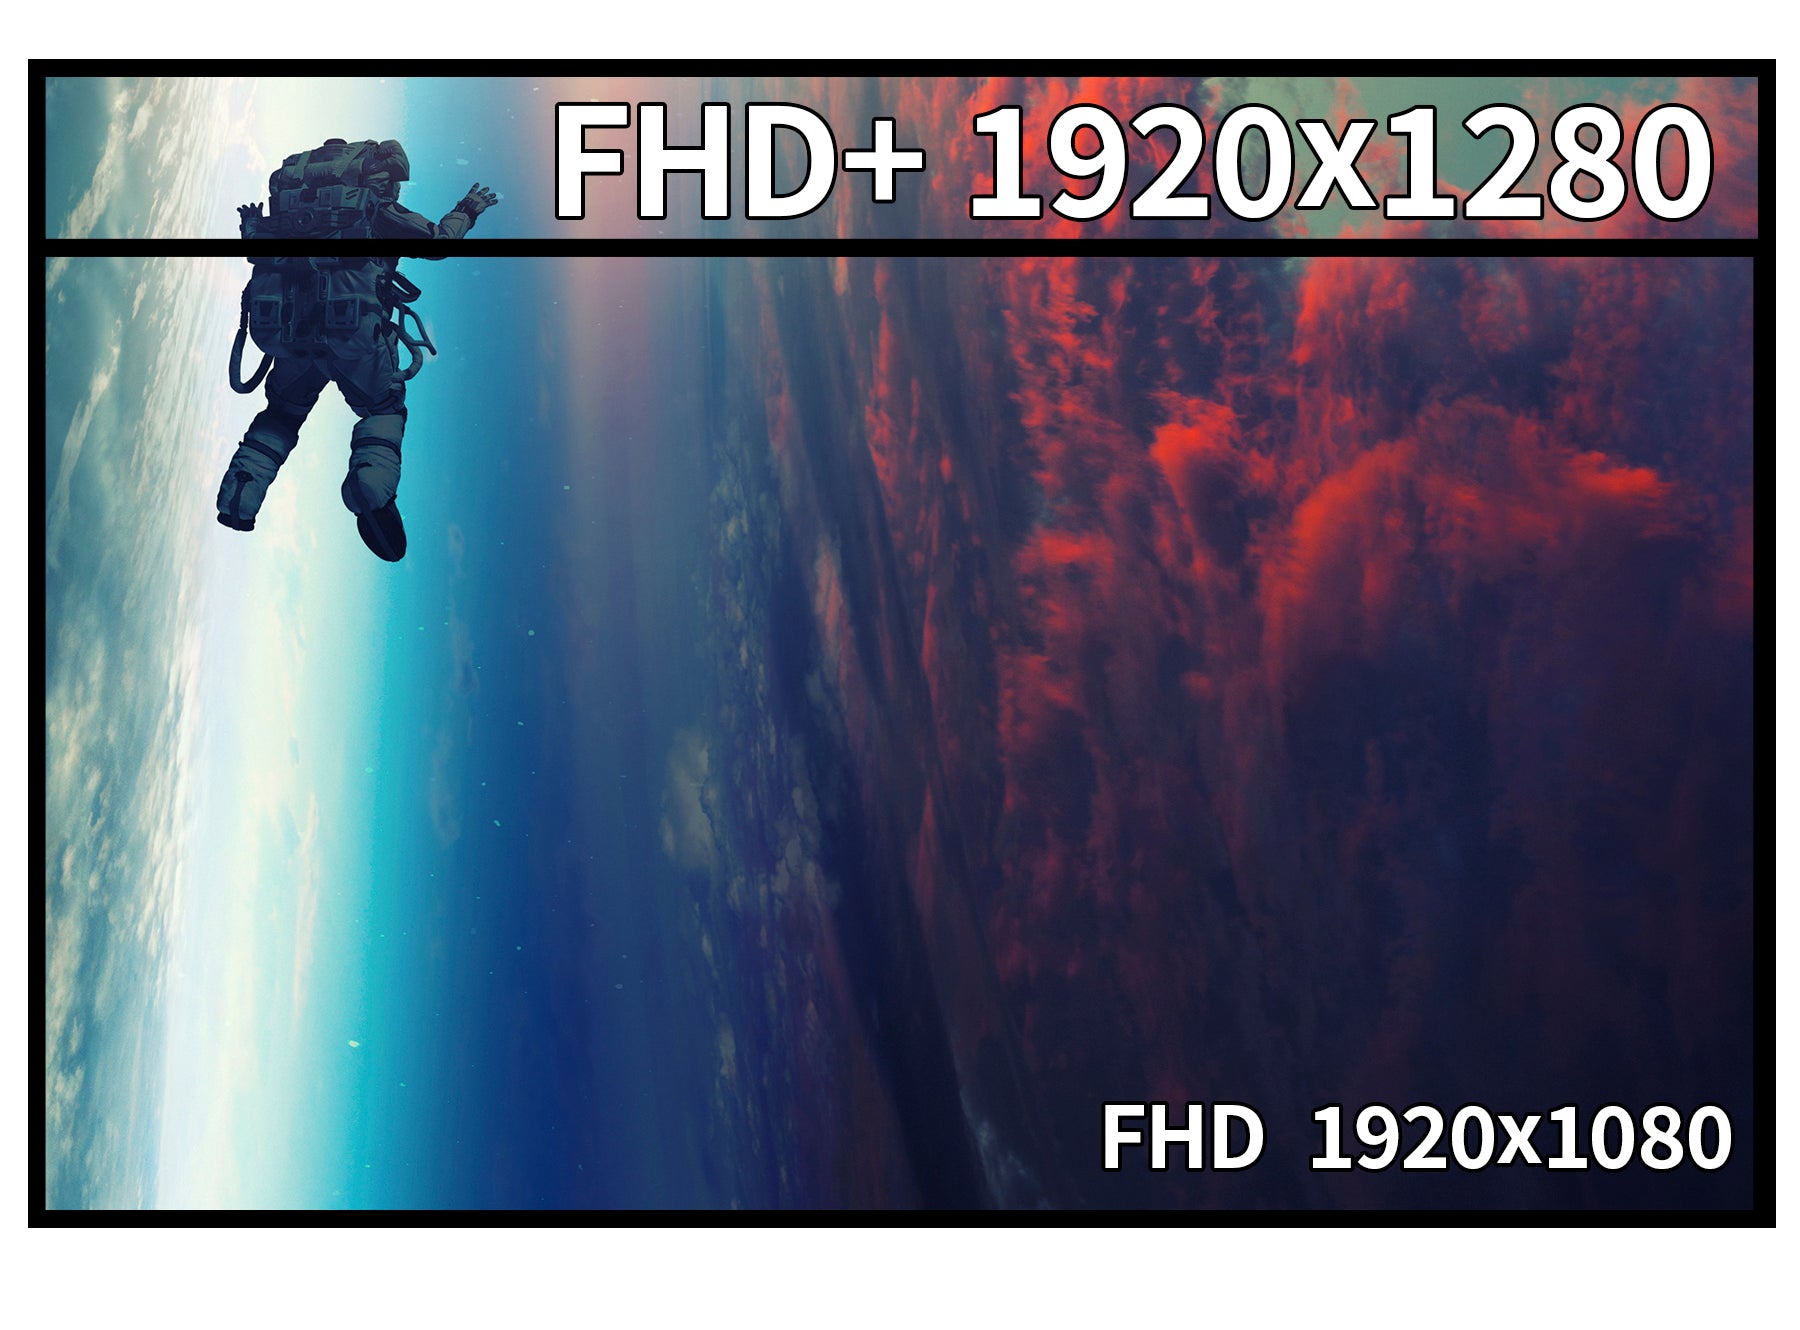 JAPANNEXT 10.5インチ IPSパネル フルHD+(1920x1280)解像度